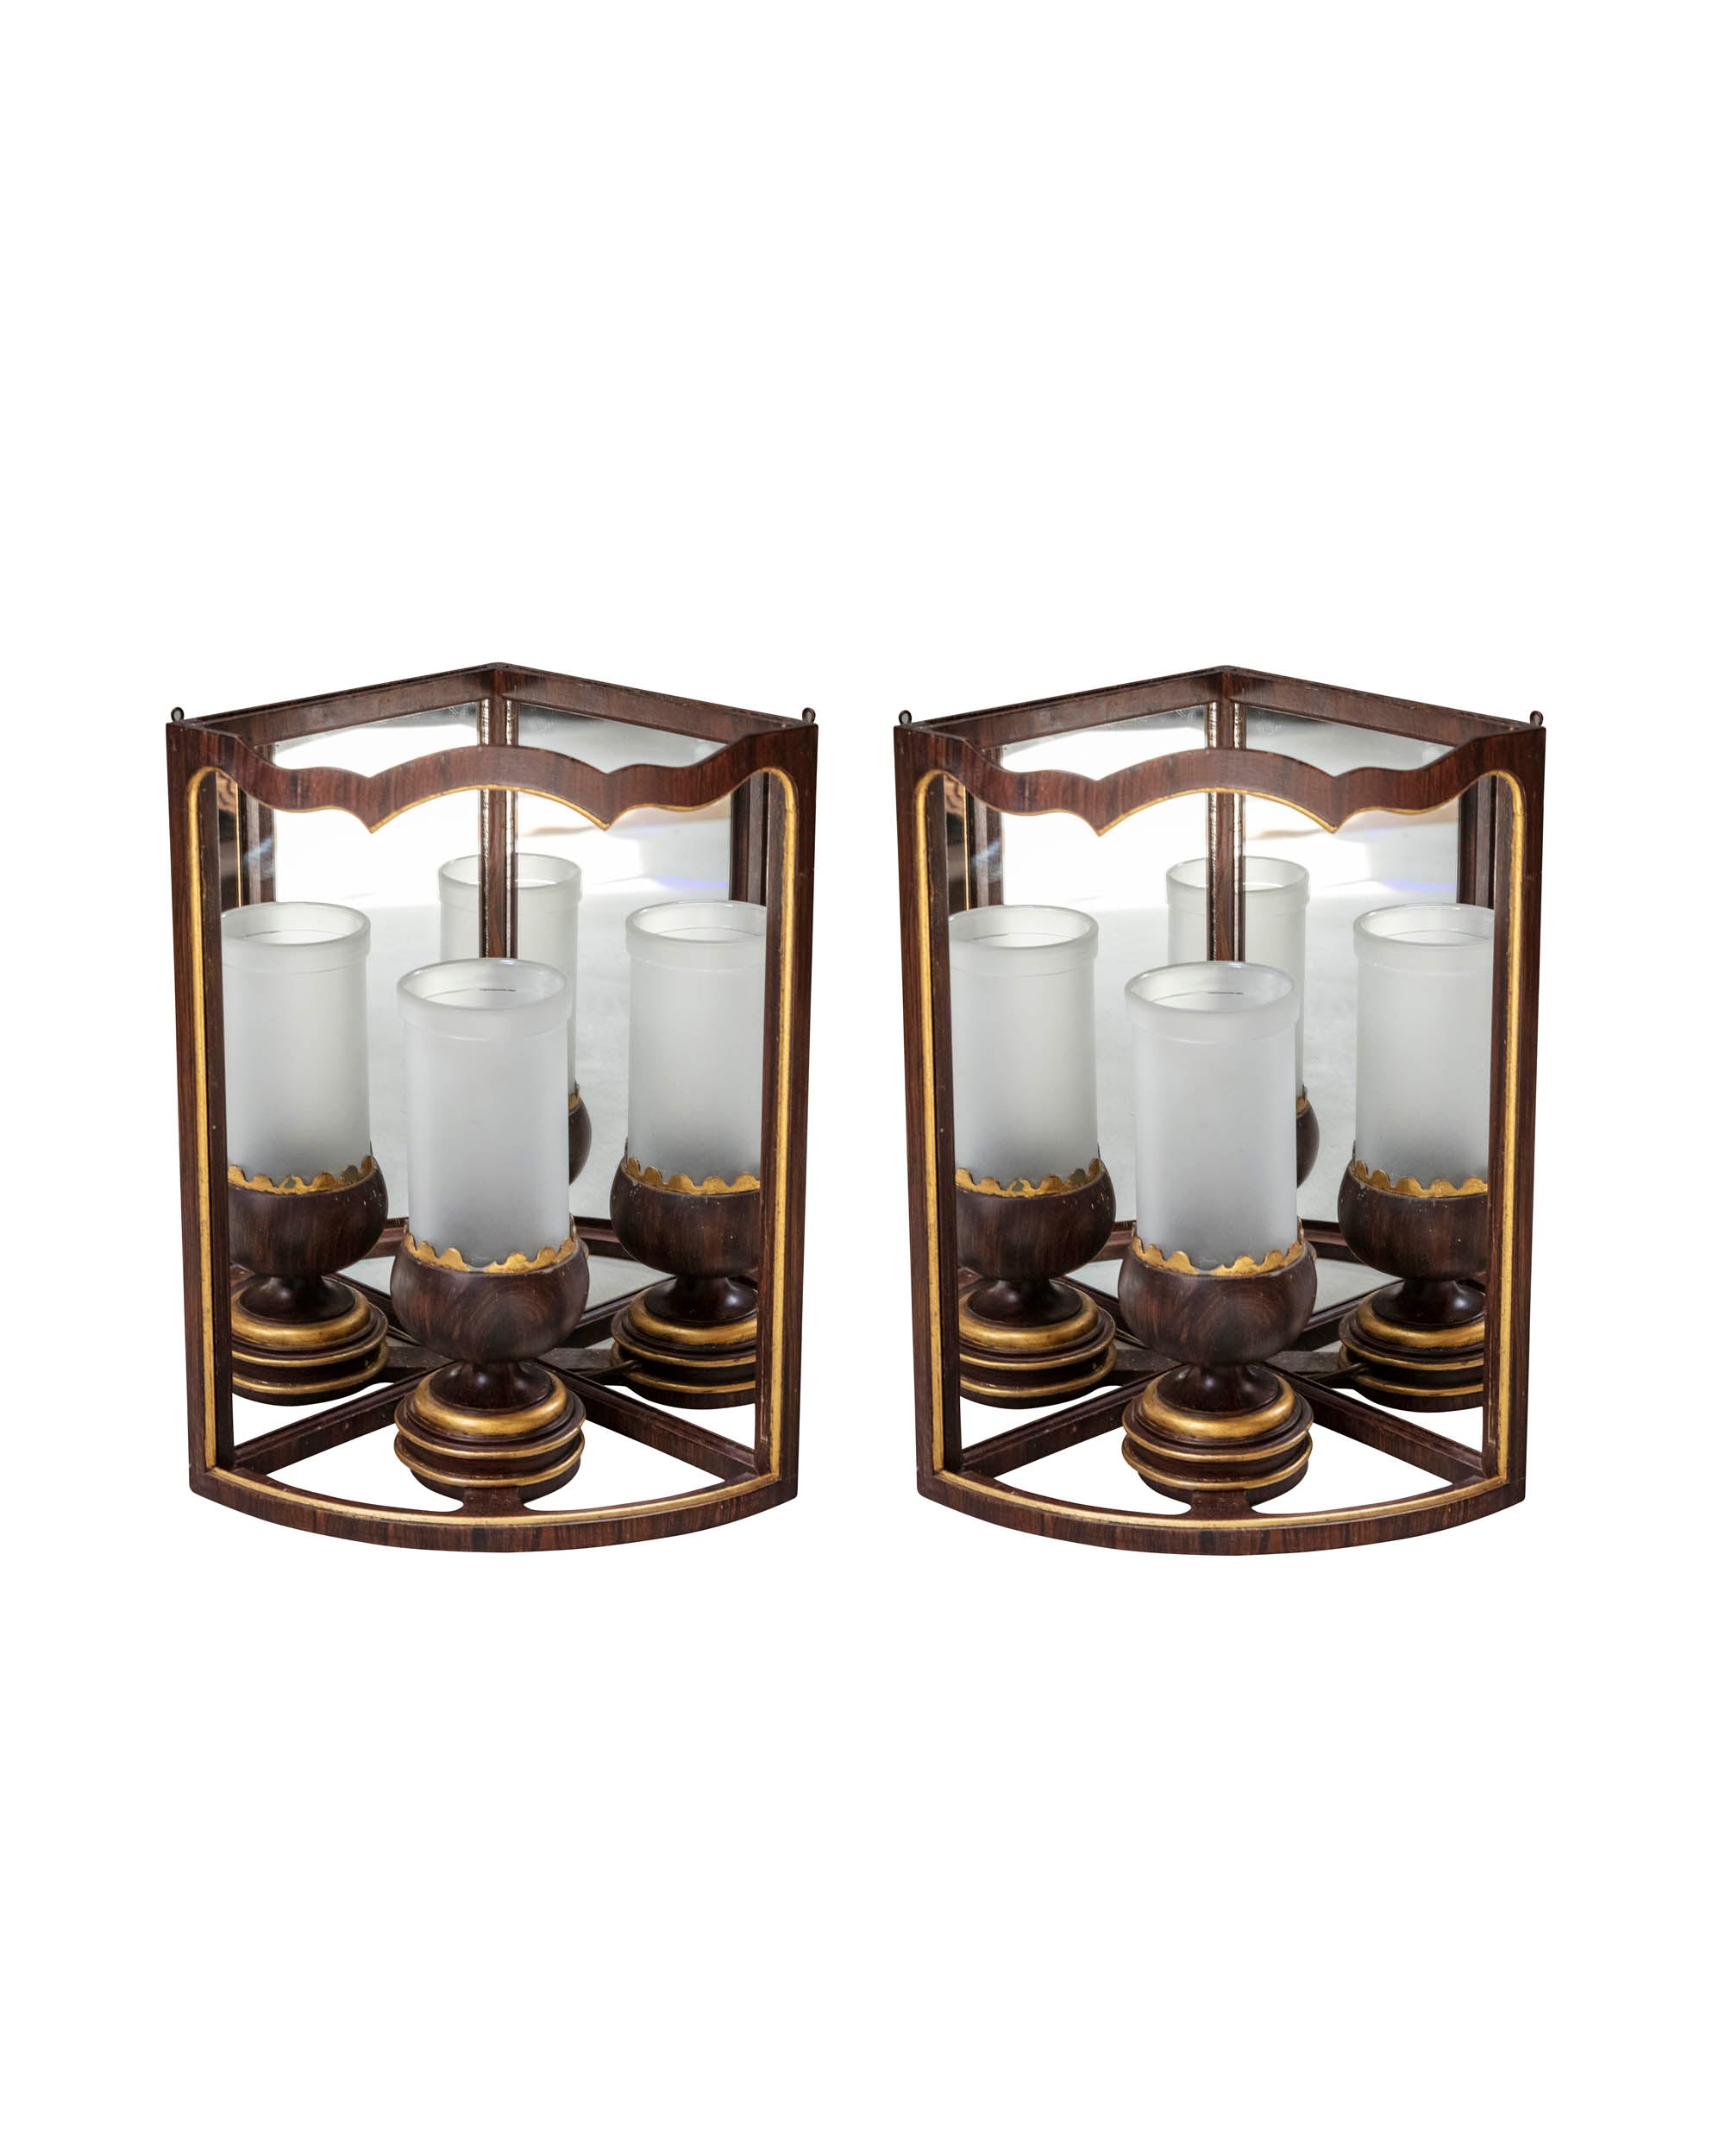 Paire de lampes de table angulaires en bois polychrome "Trompe l`oeil" avec miroir intérieur. Début du XXème siècle